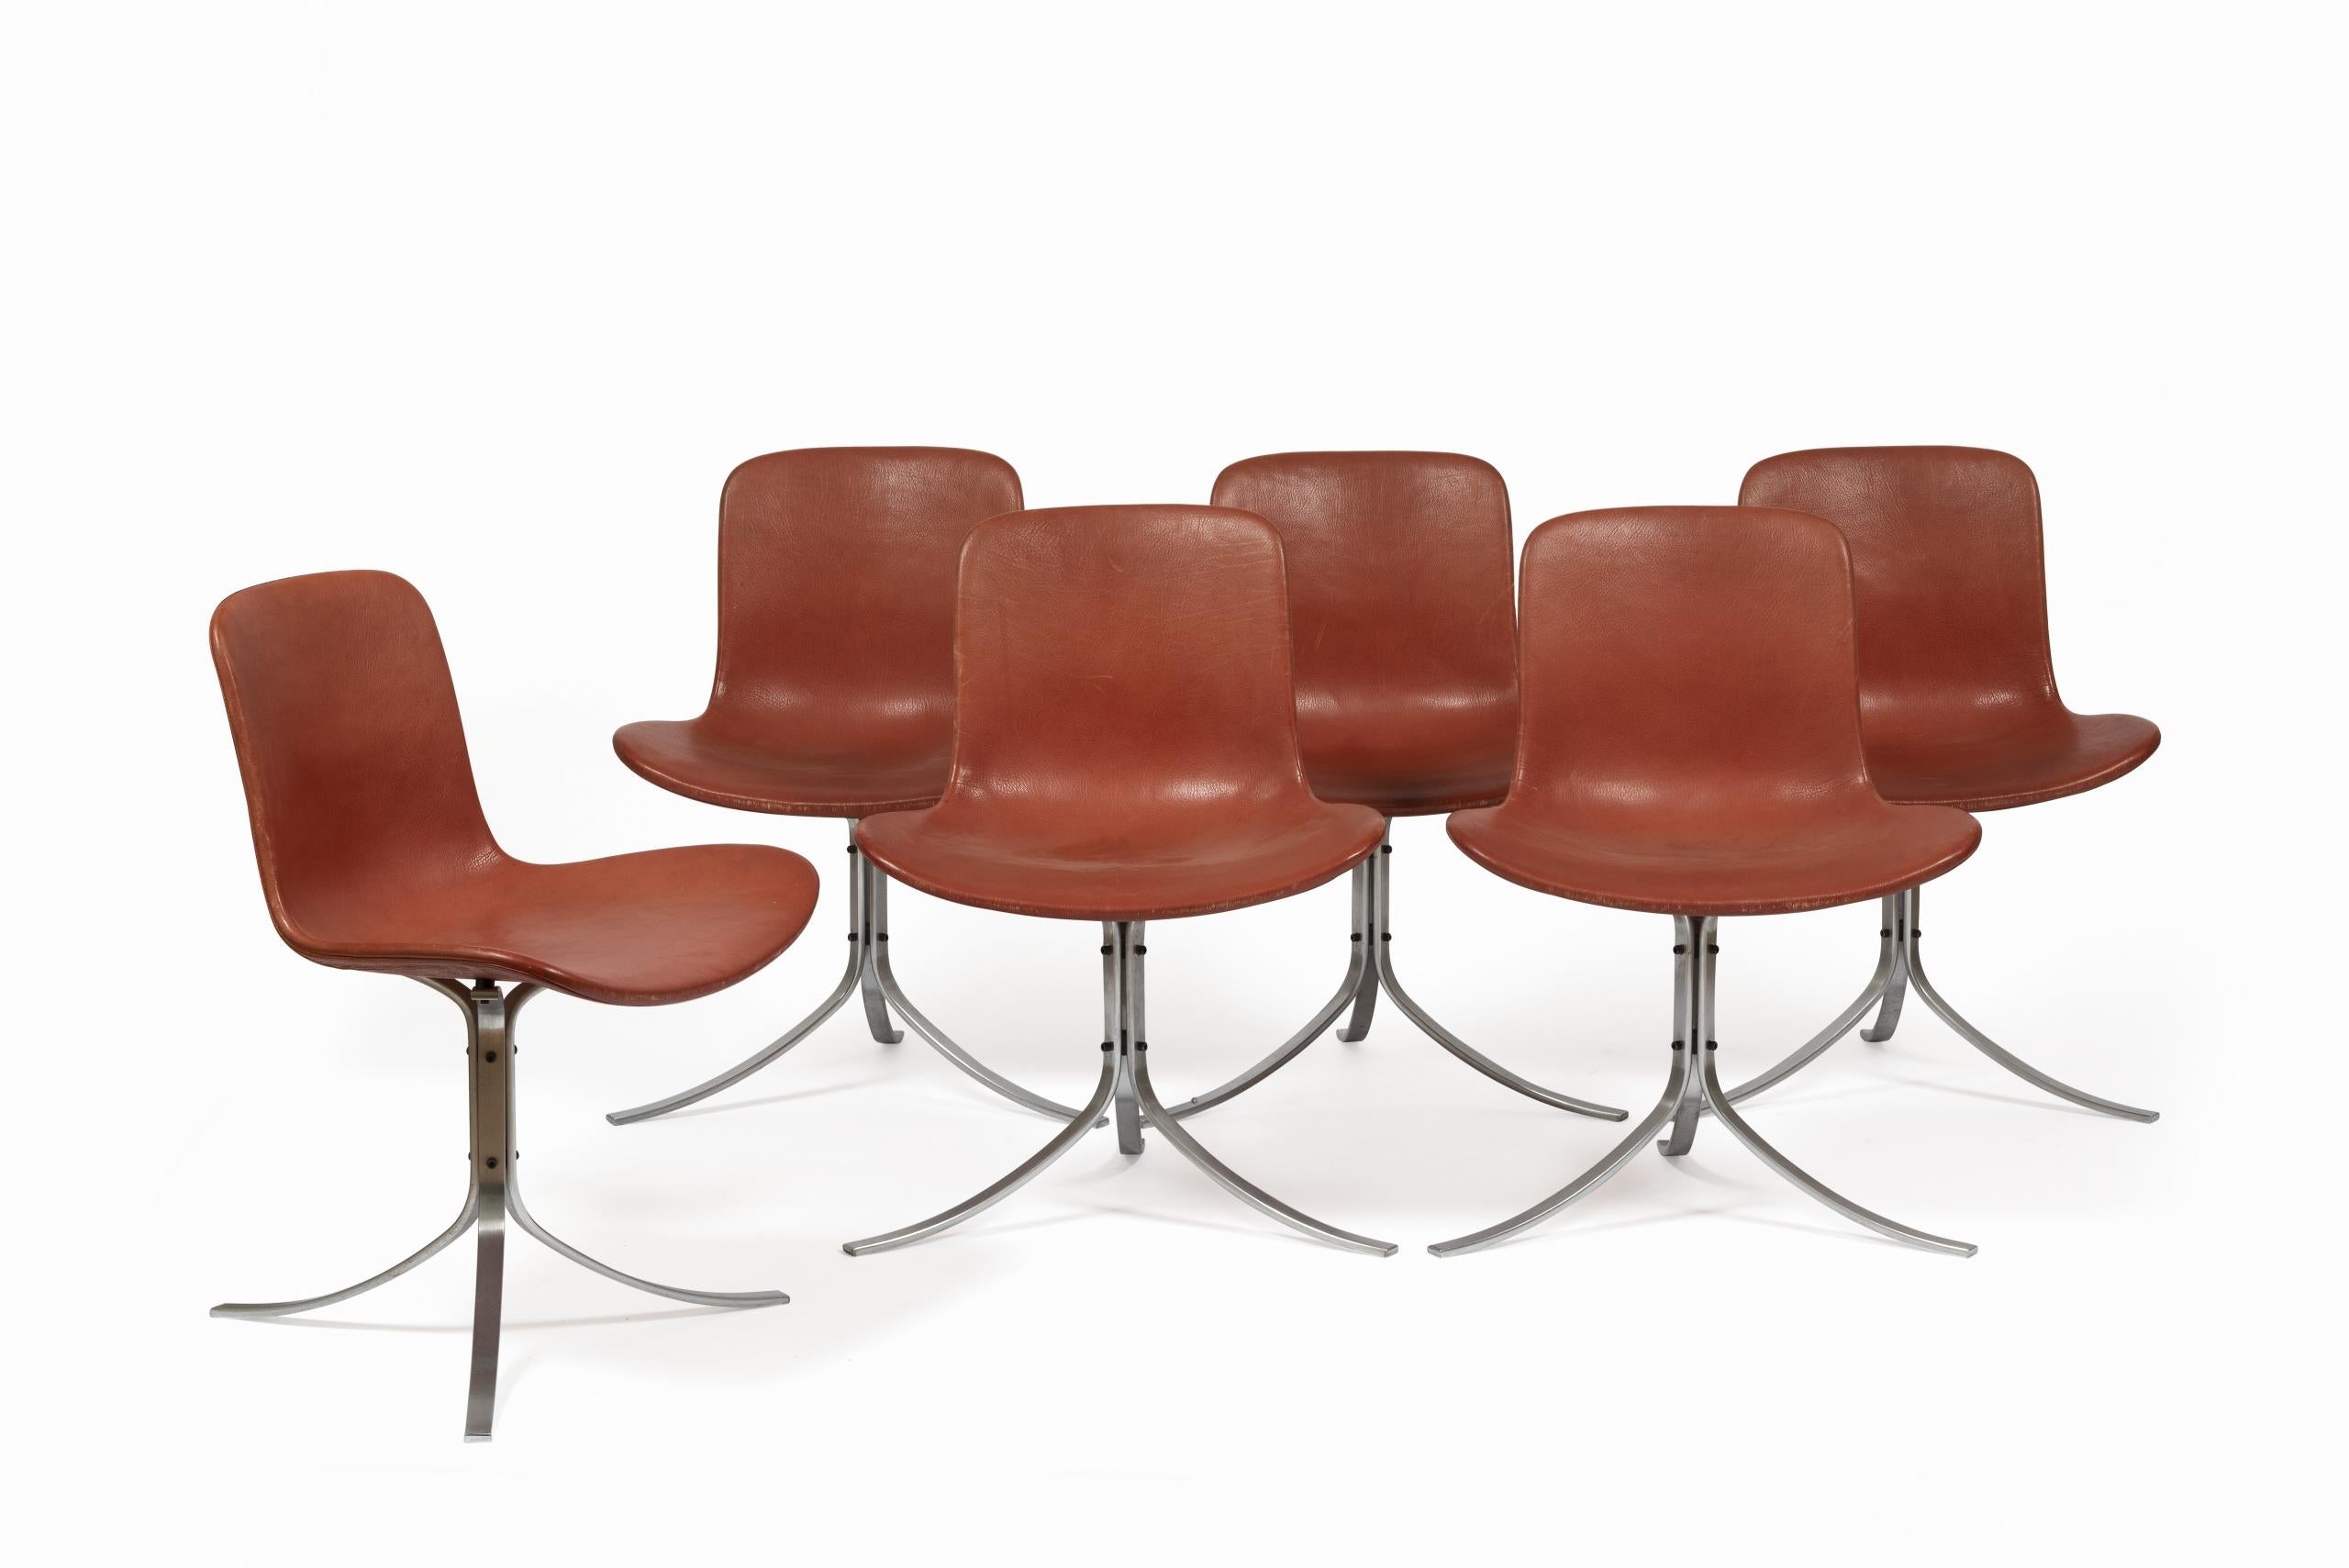 Le modèle PK9 également appelé “la chaise Tulipe” fait partie de la collection Poul Kjaerholm de Fritz Hansen, 1961.

De design danois, cette chaise est composée de 3 pièces en acier inoxydable brossé qui se rejoignent pour former les pieds et